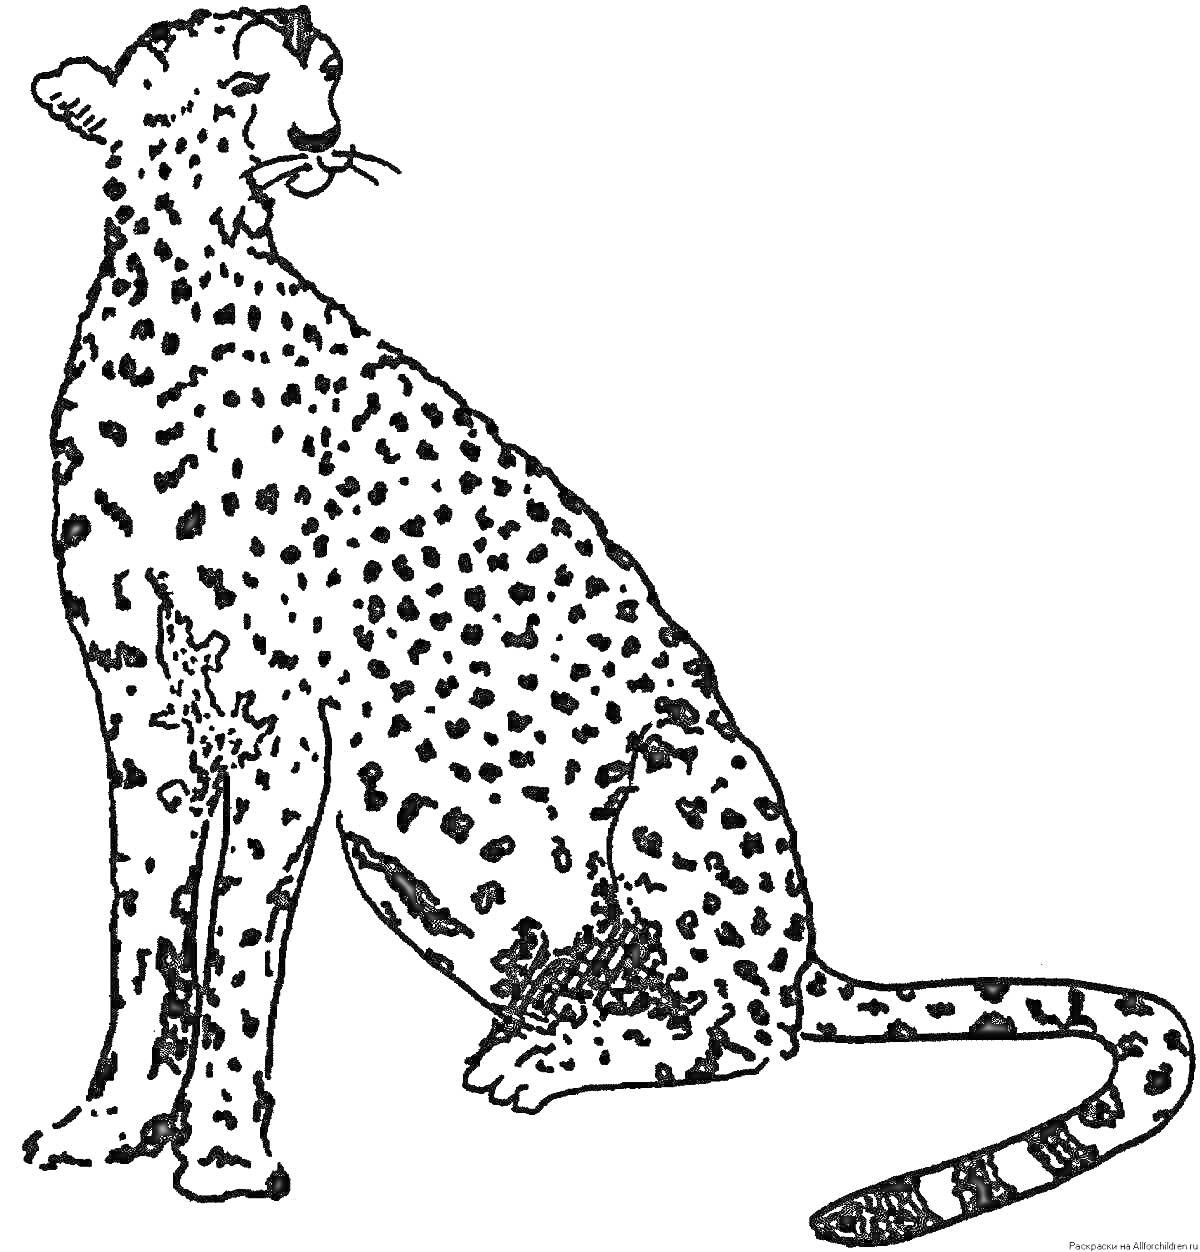 Раскраска Королевский гепард сидит, изображен сбоку с поднятой головой и длинным хвостом с пятнистым узором.